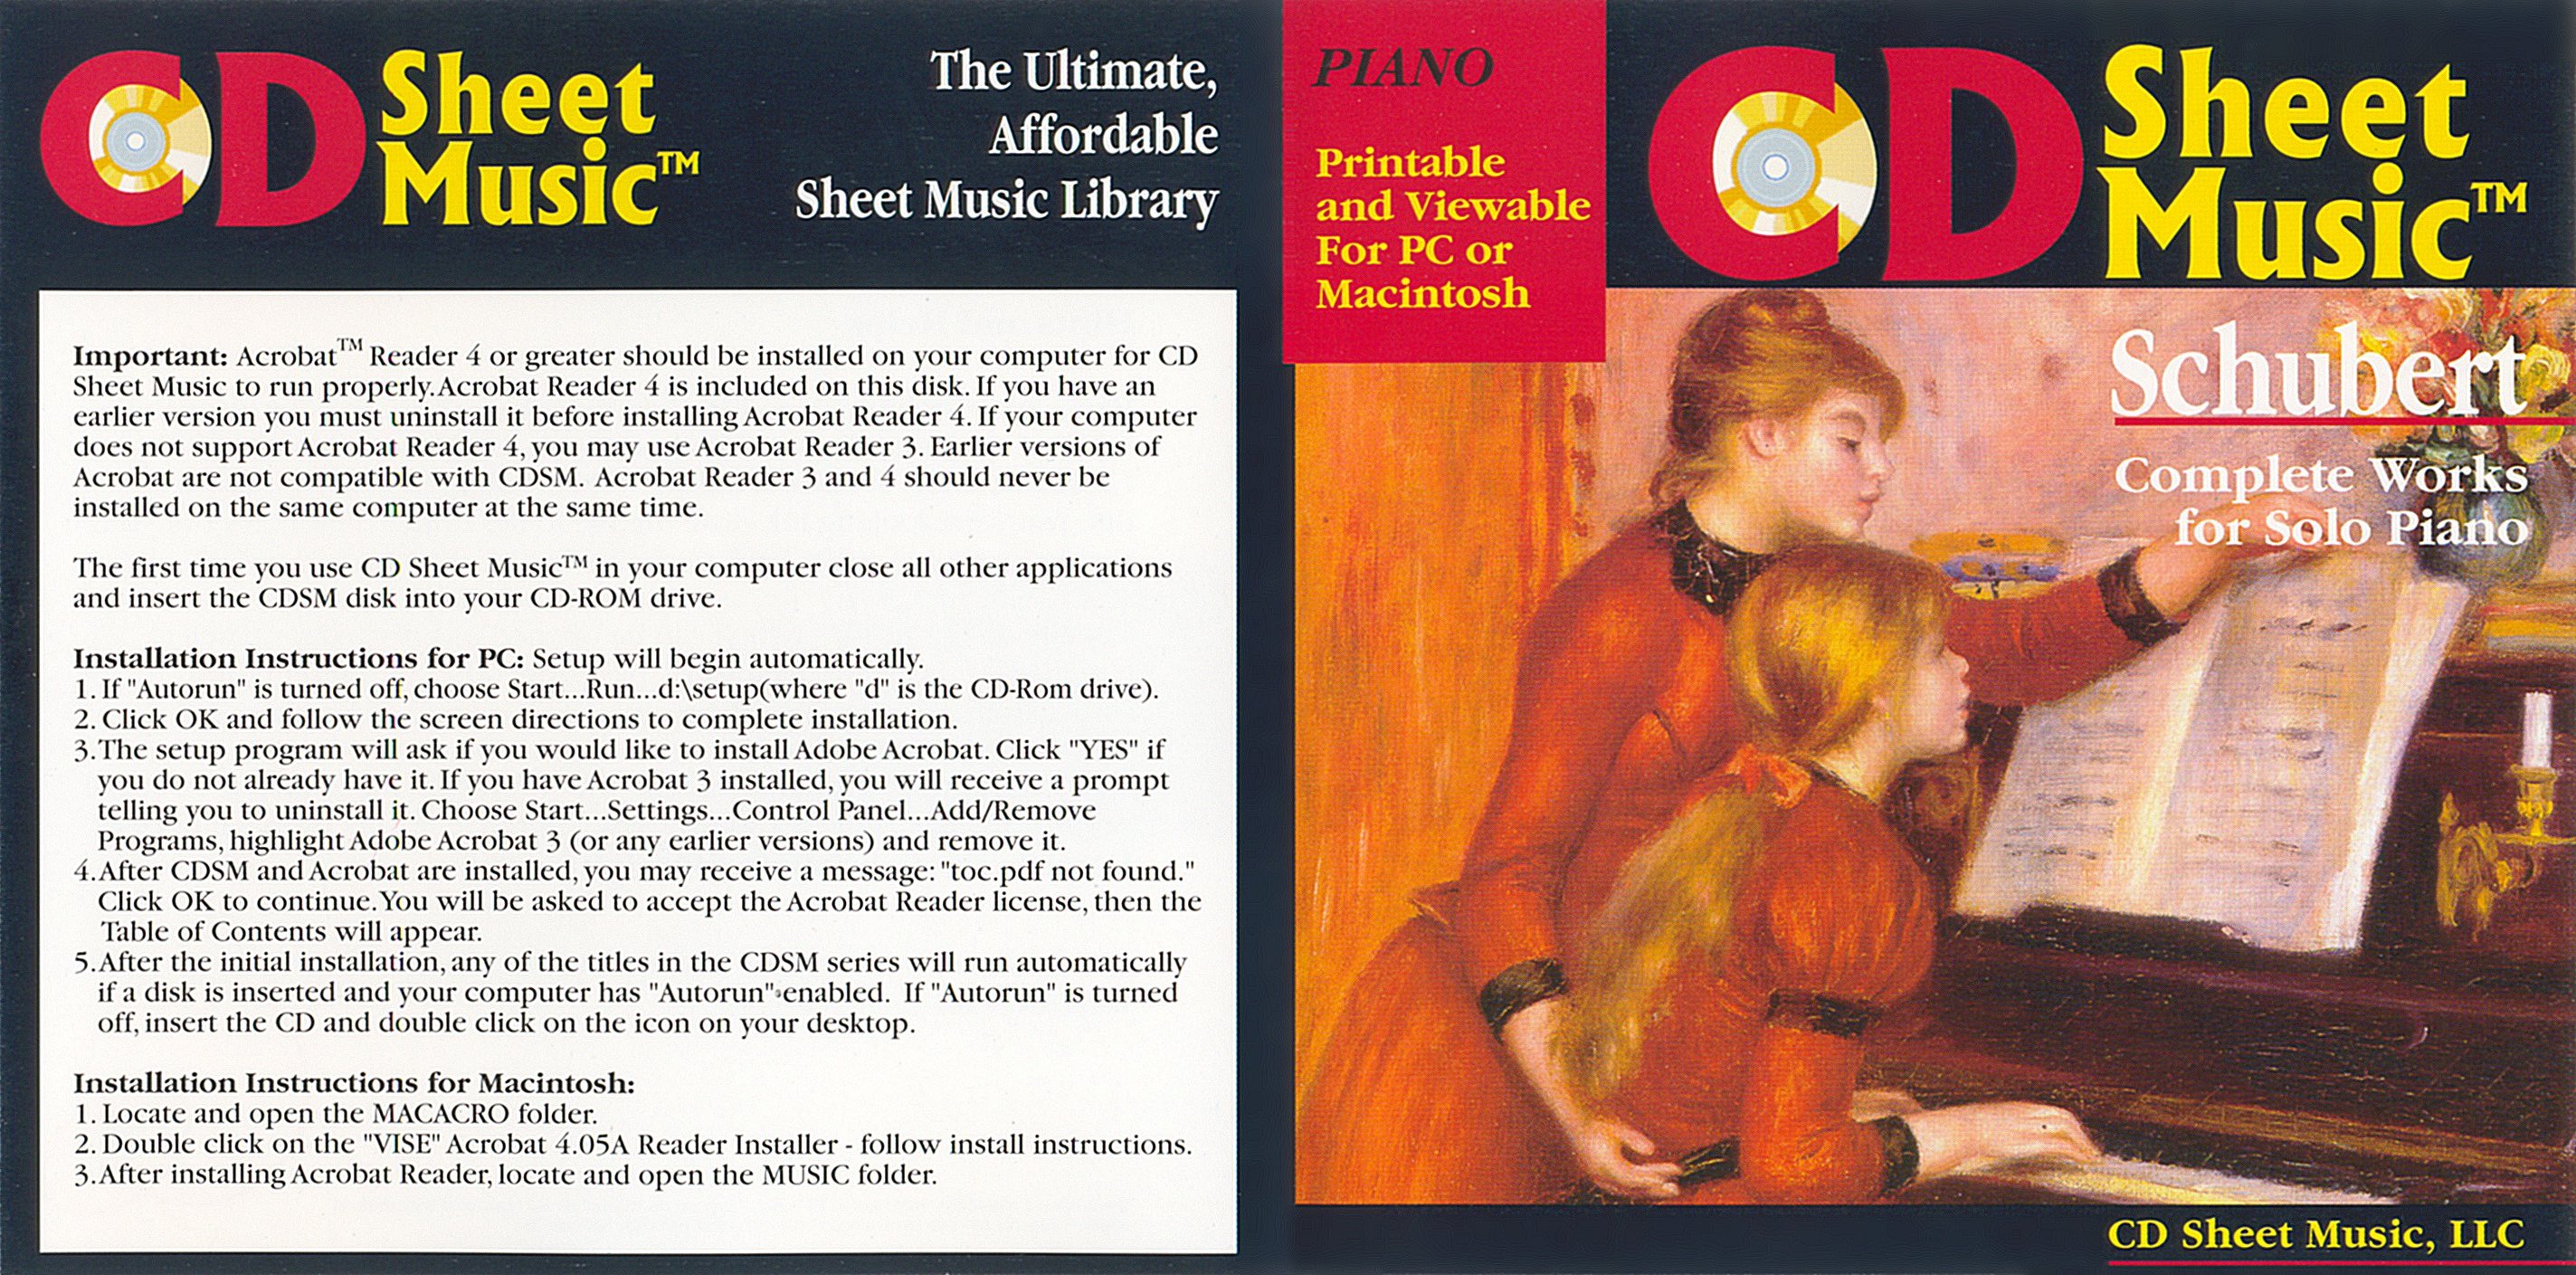 CD Sheet Music - Franz Schubert Complete Piano Works